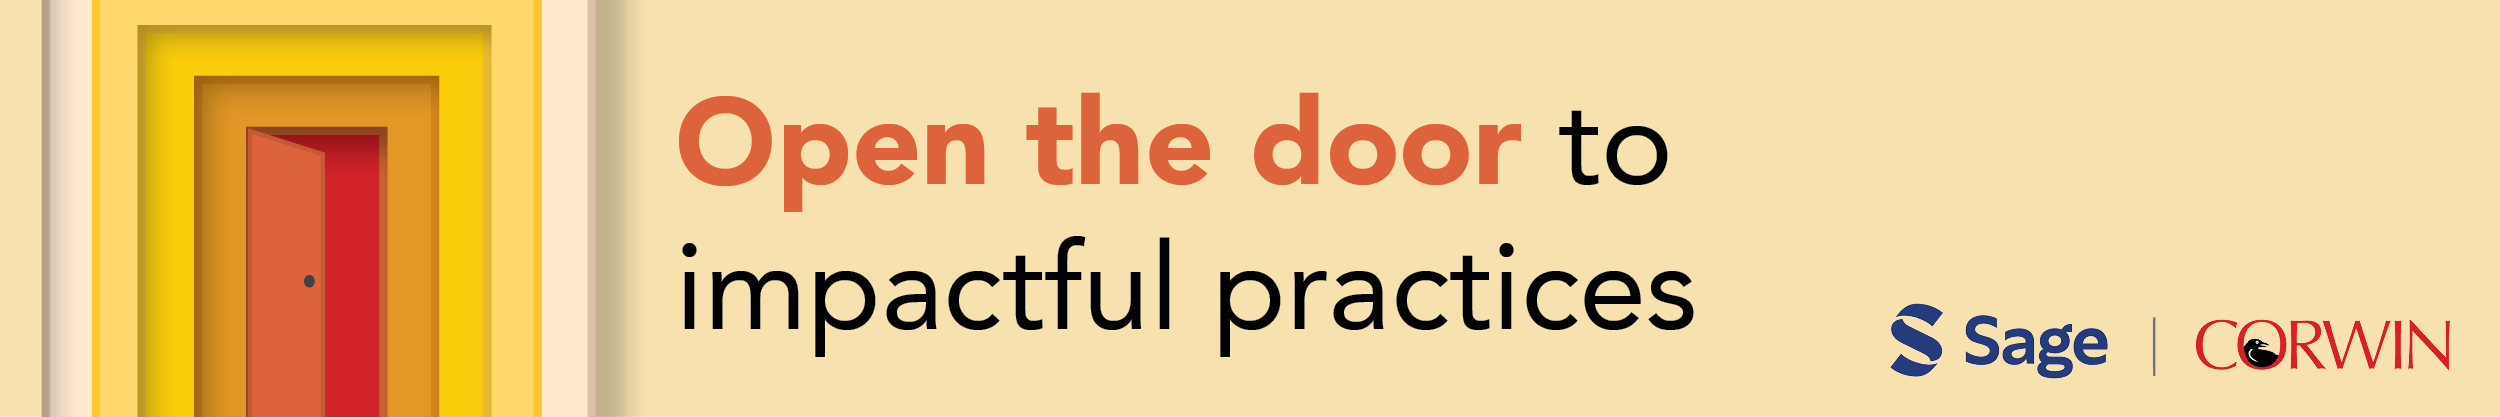 Open the door to impactful practices